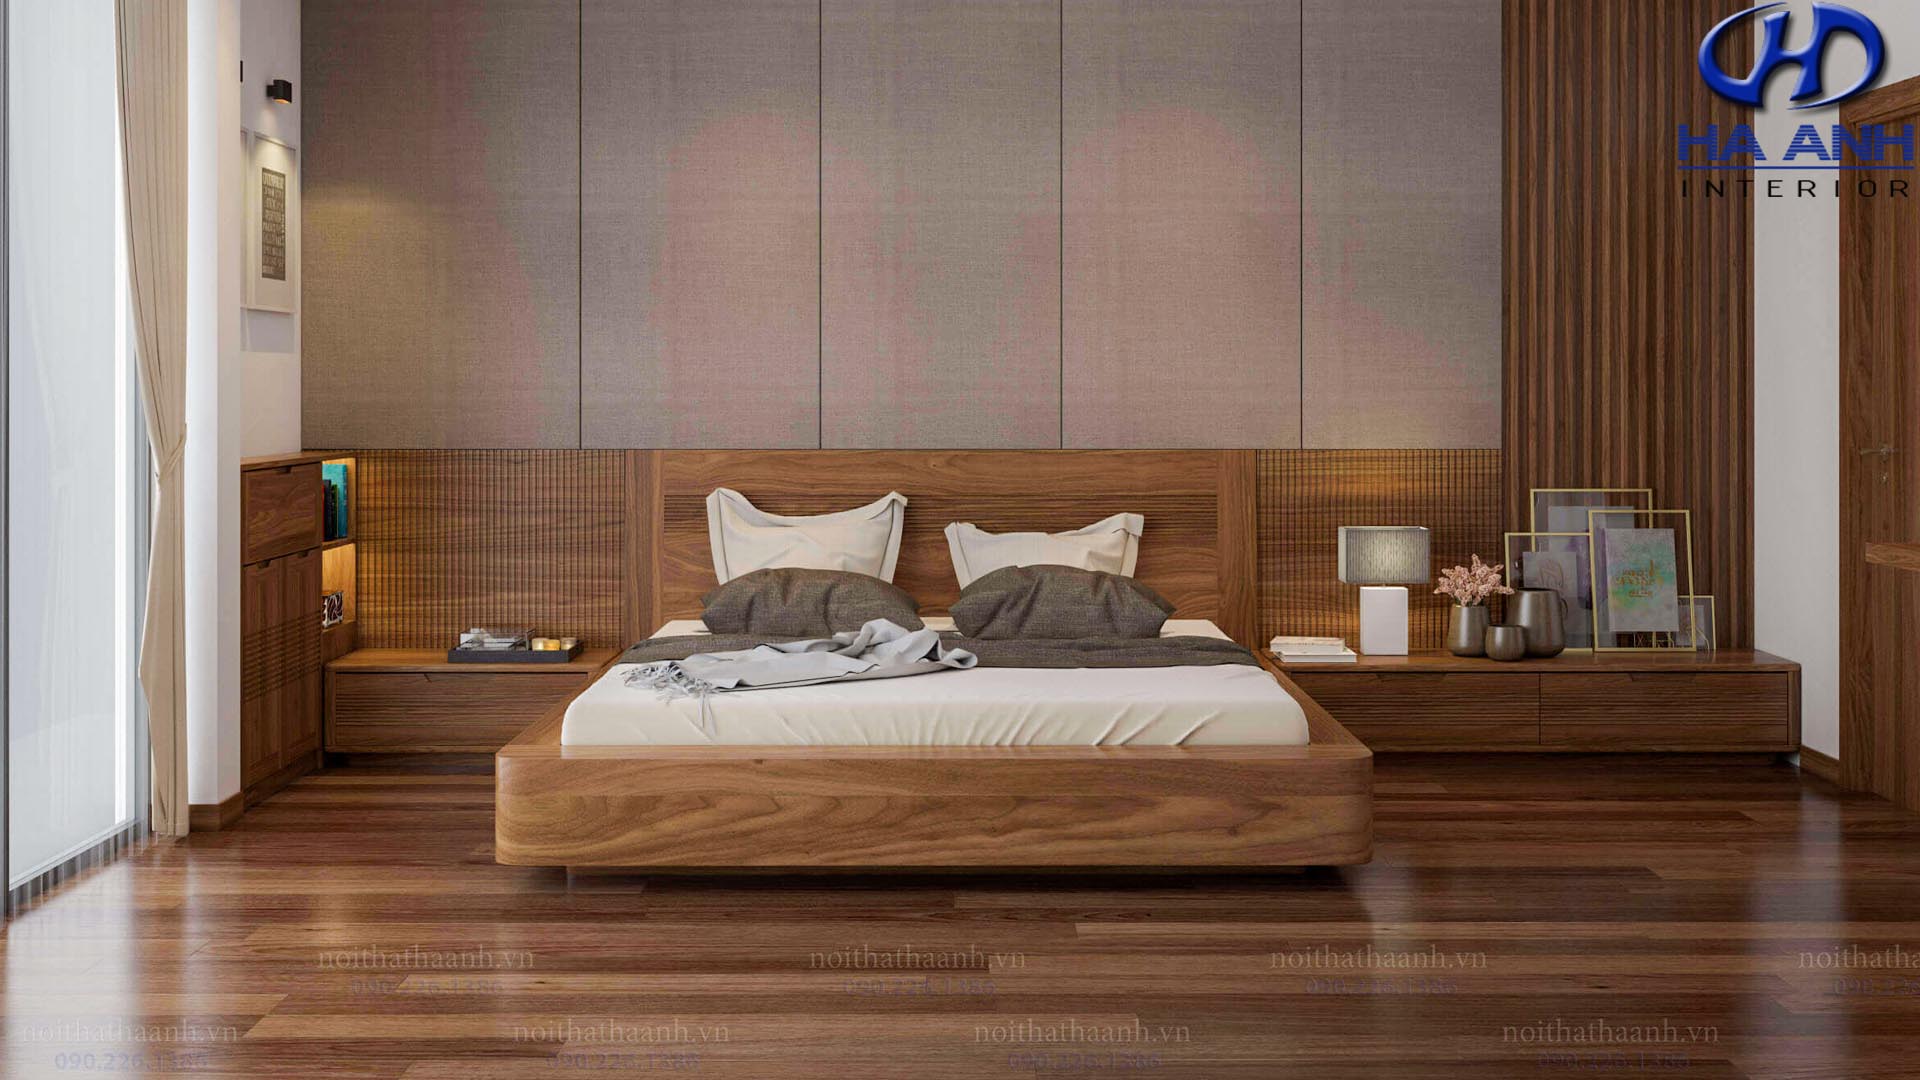 Hướng dẫn bài trí phòng ngủ gỗ óc chó phù hợp với không gian nhà bạn